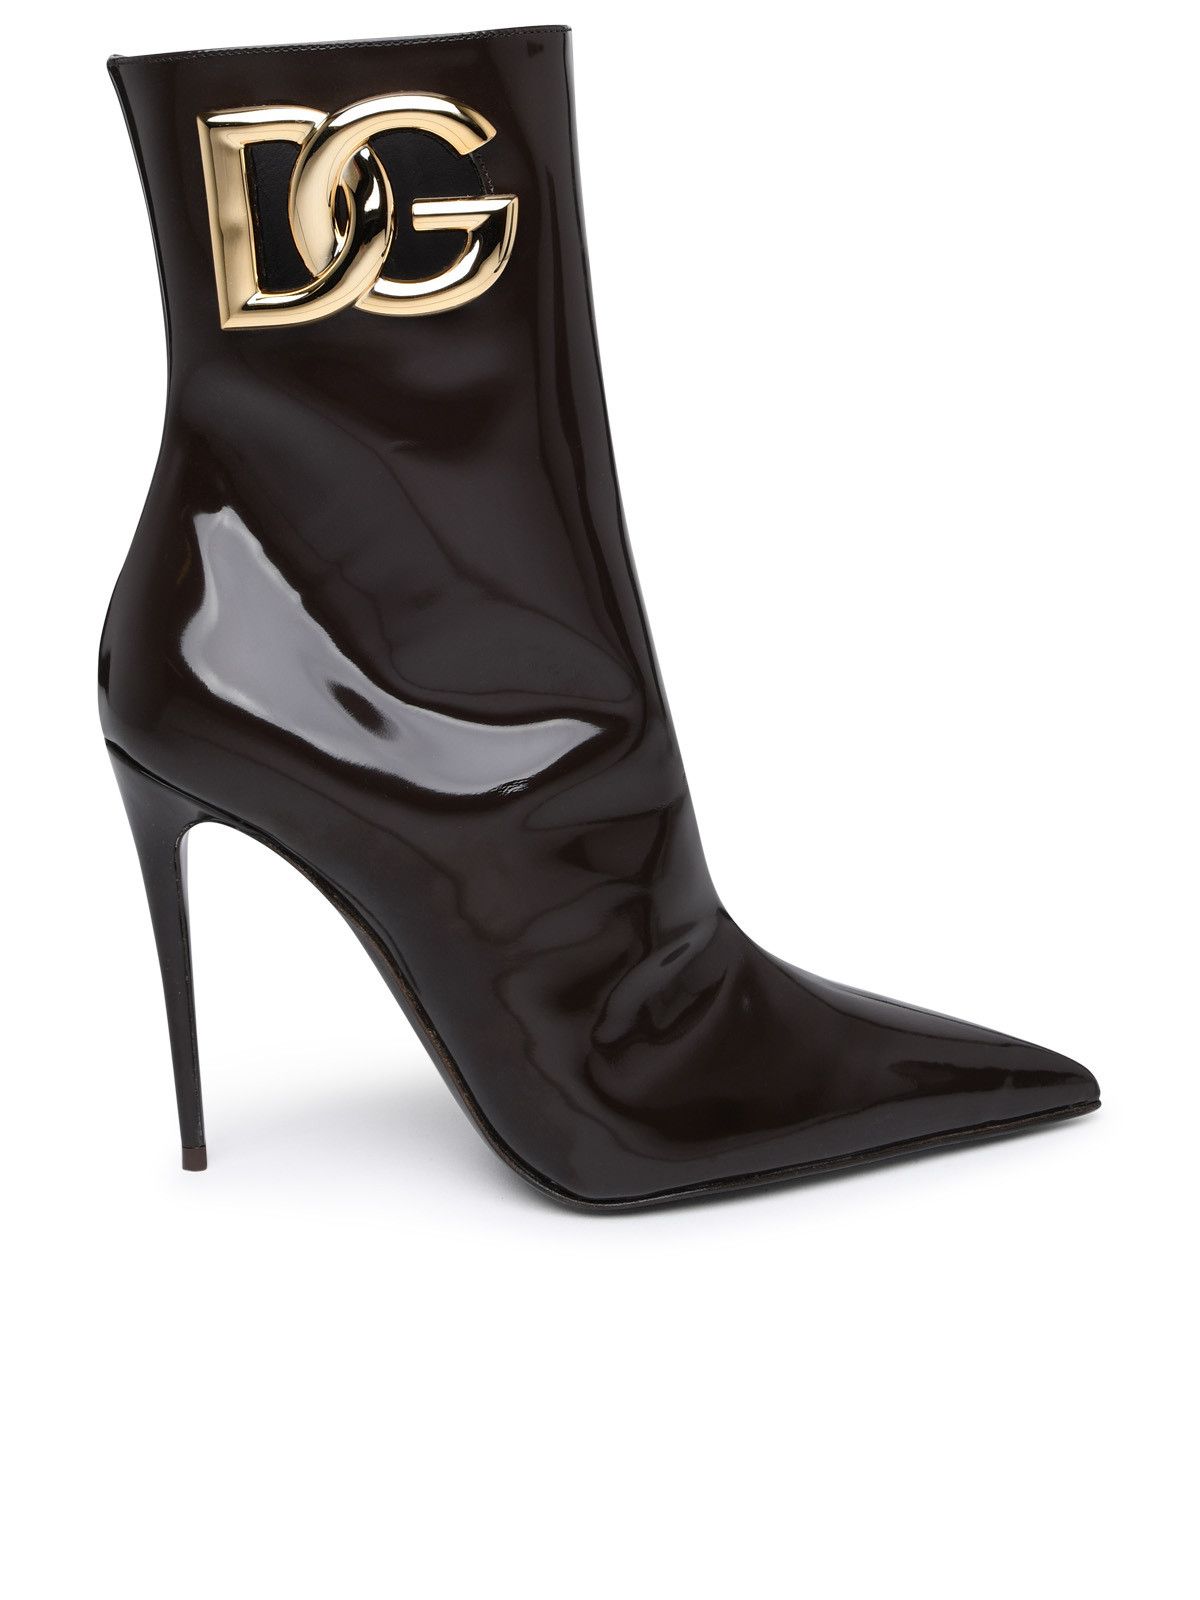 Dolce & Gabbana Tronchetti Logo | Grailed